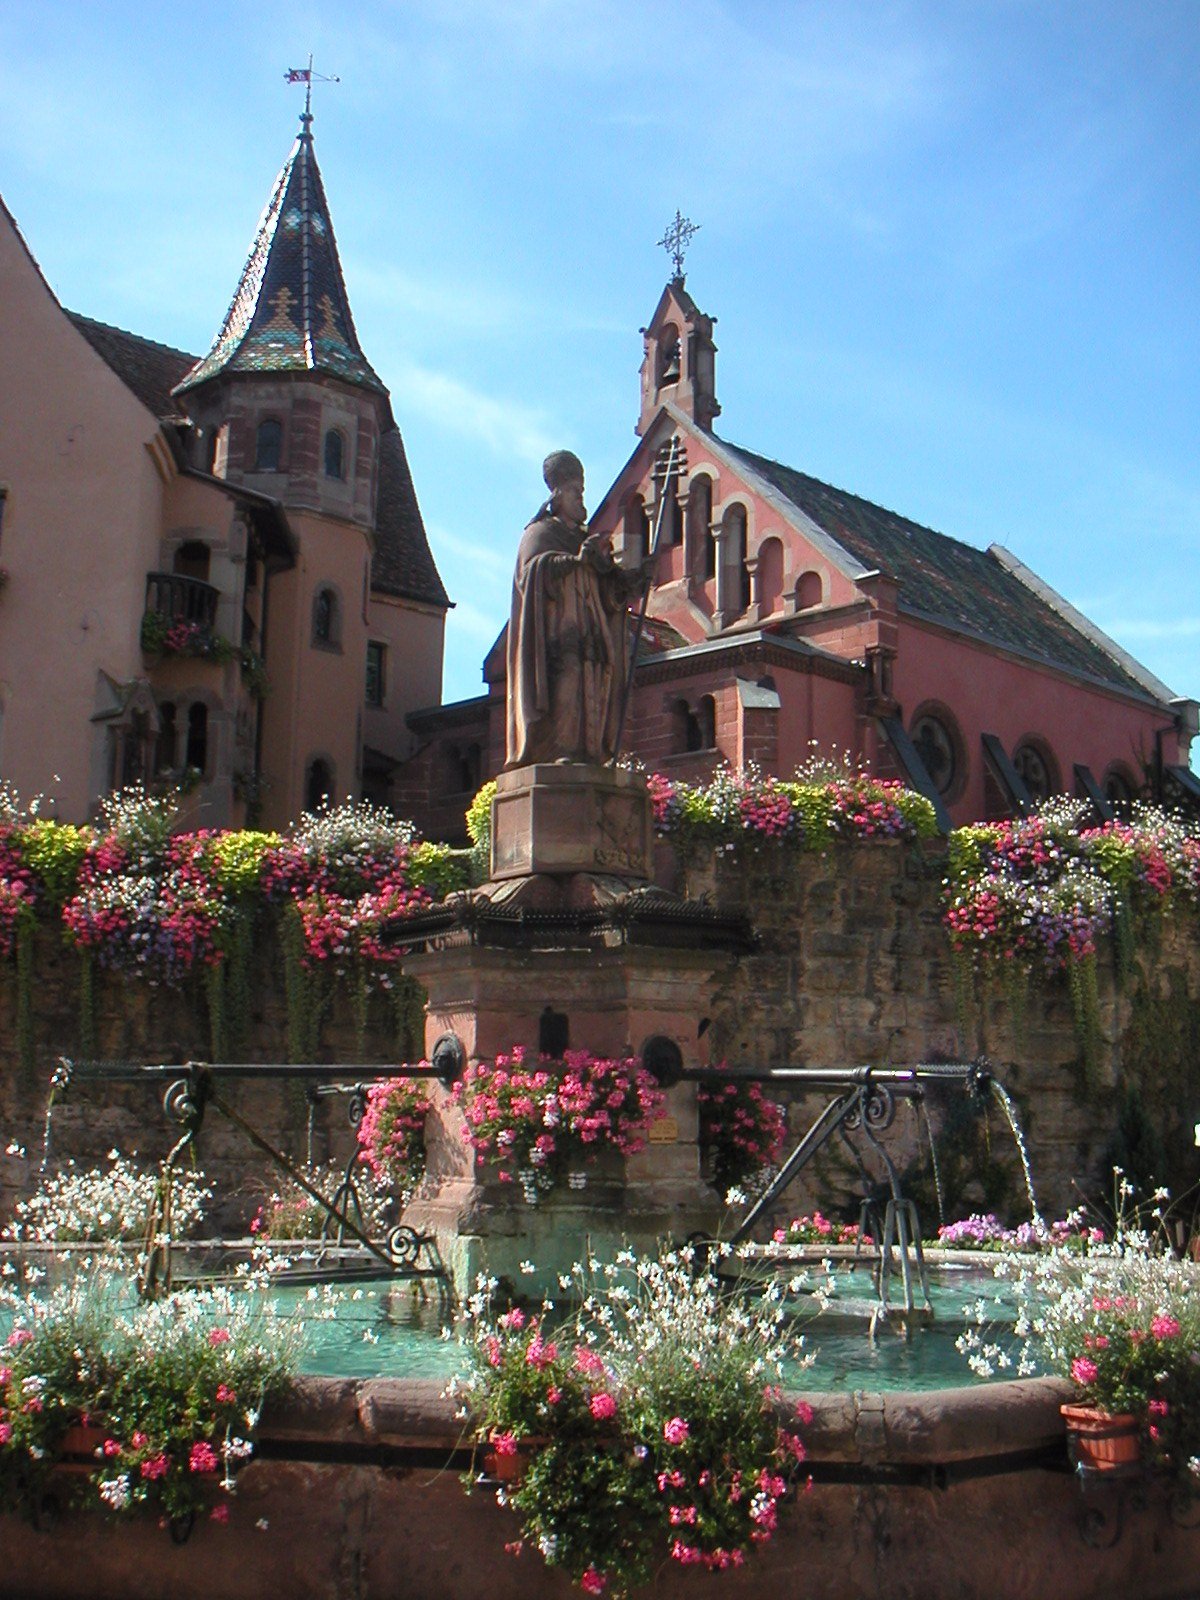 Au-bonheur-apprivoisé-Gîte-Alsace-Eguisheim-route-des-vins